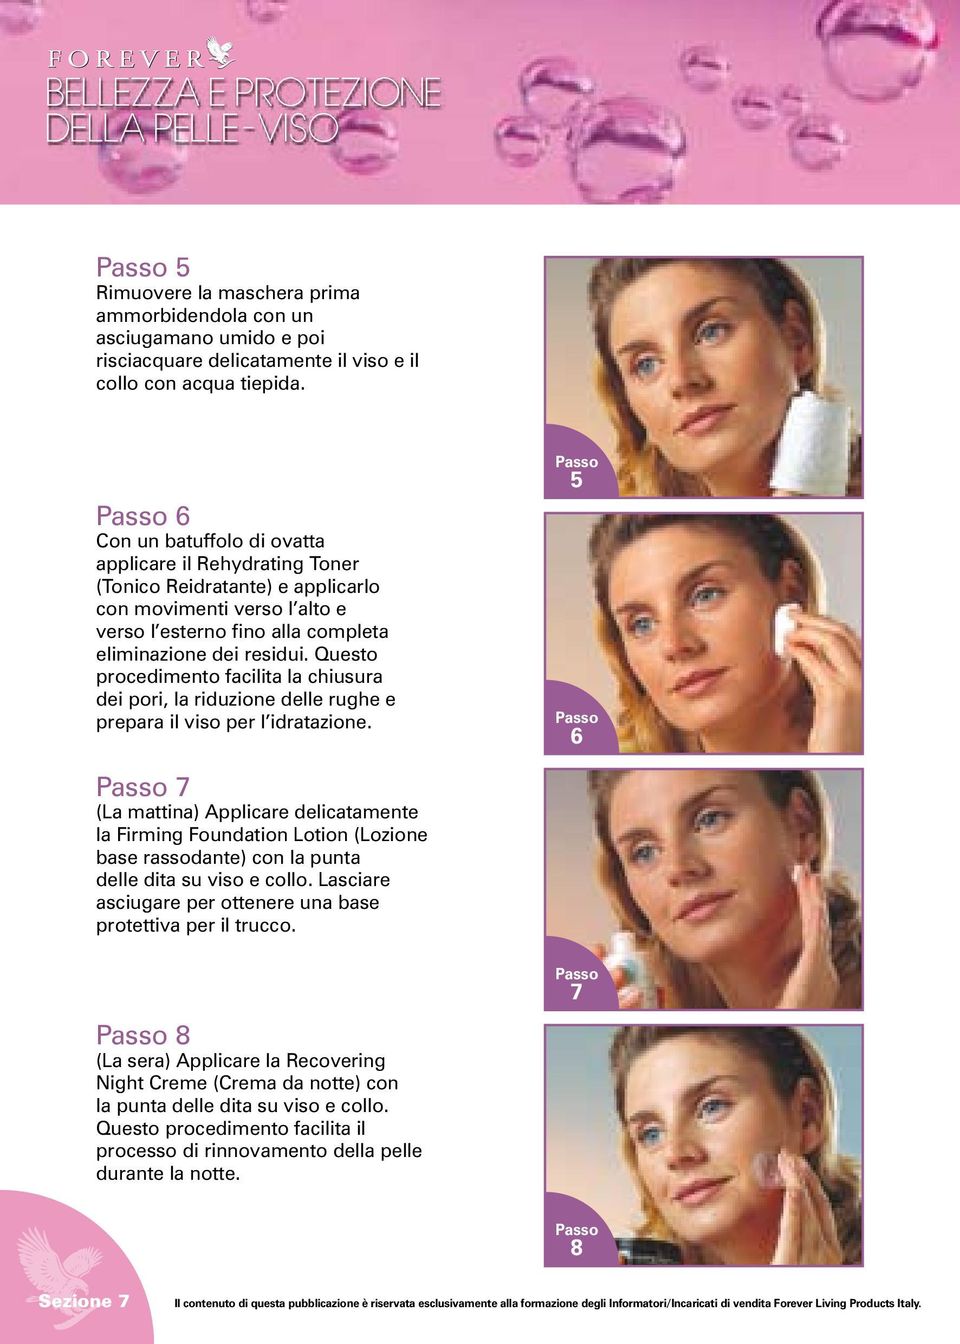 Questo procedimento facilita la chiusura dei pori, la riduzione delle rughe e prepara il viso per l idratazione.